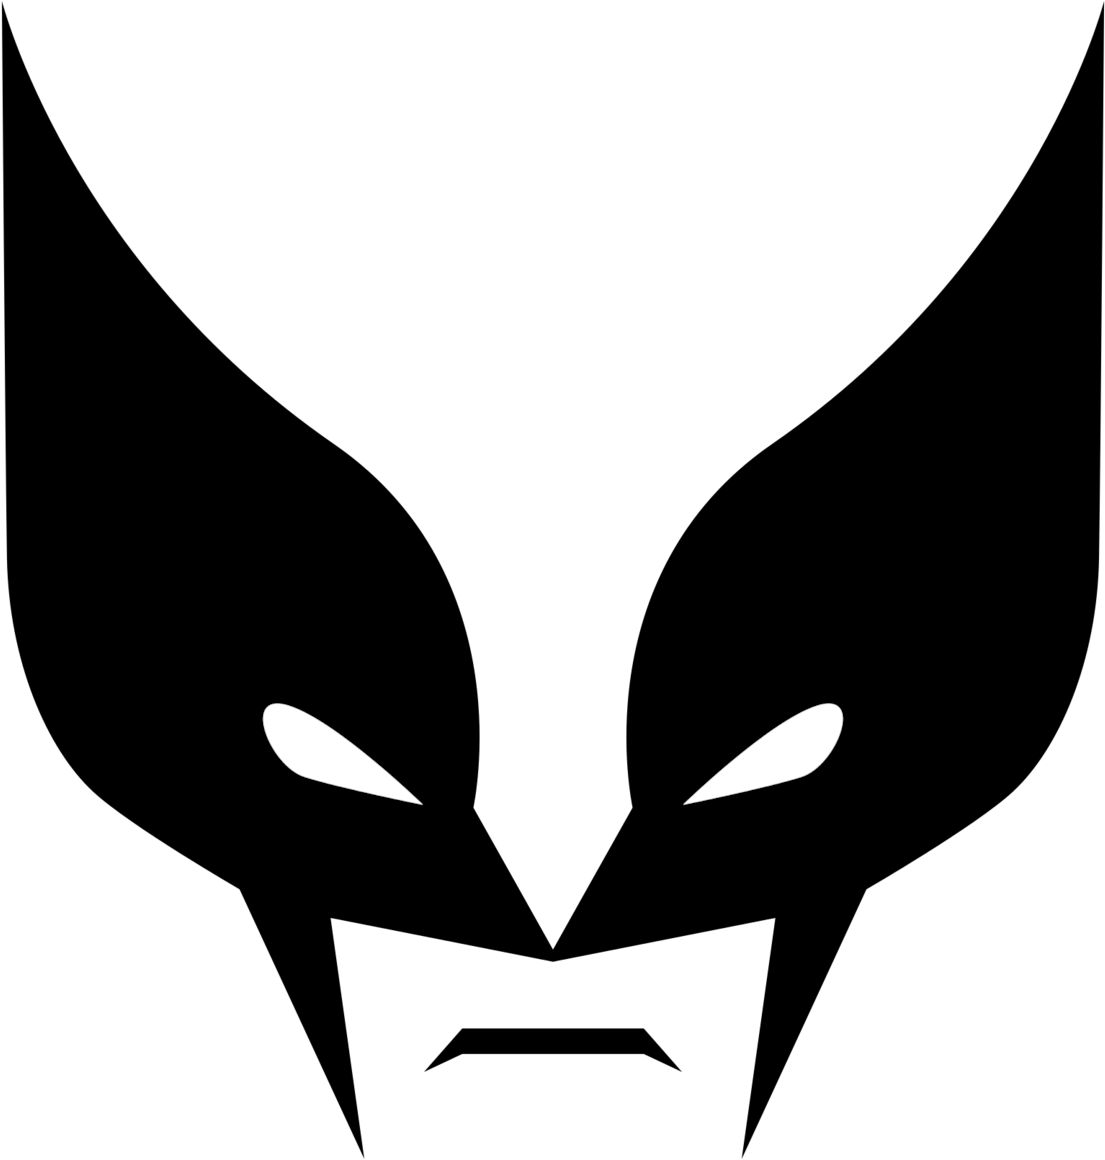 Wolverine Mask Clipart - Wolverine Mask Clipart (1200x1200)